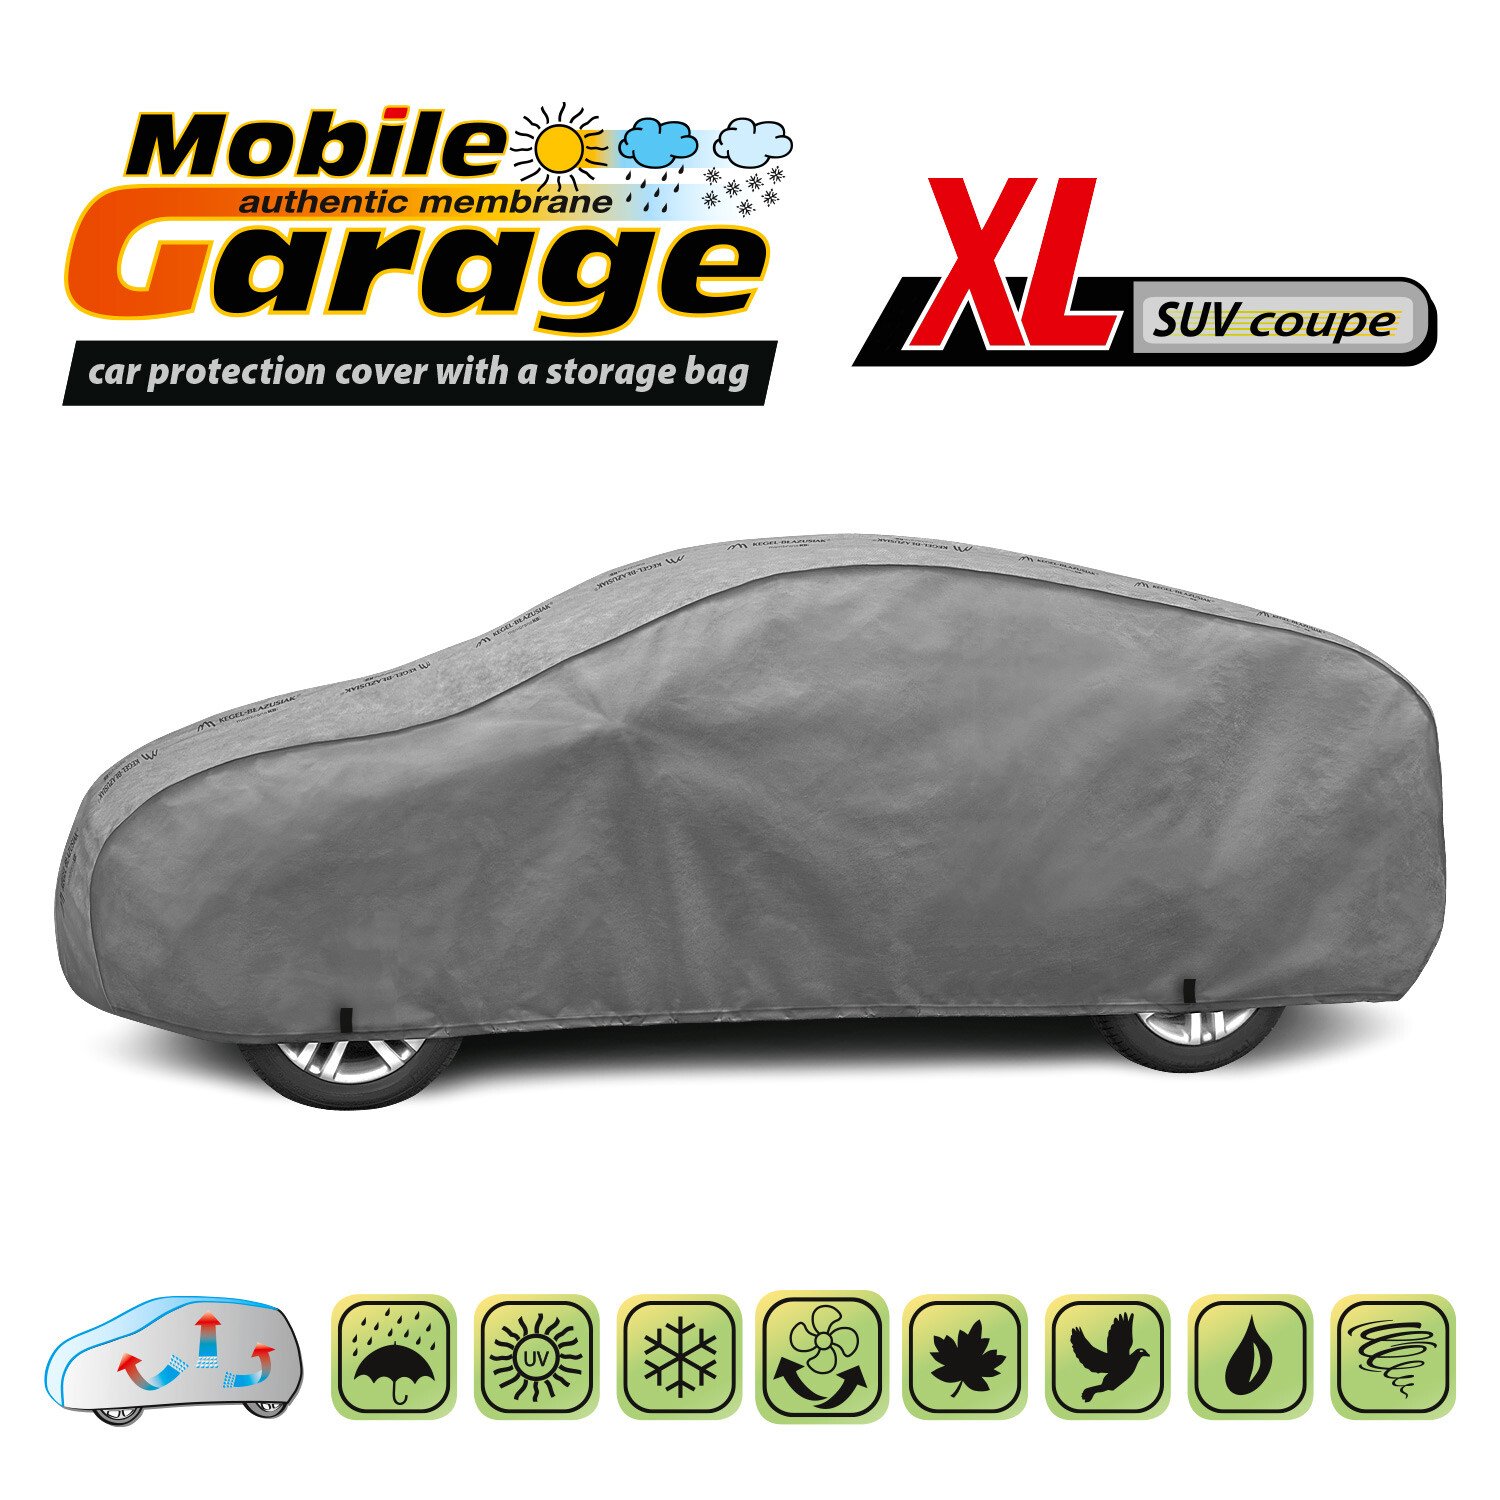 Prelata auto completa Mobile Garage - XL SUV - Coupe thumb